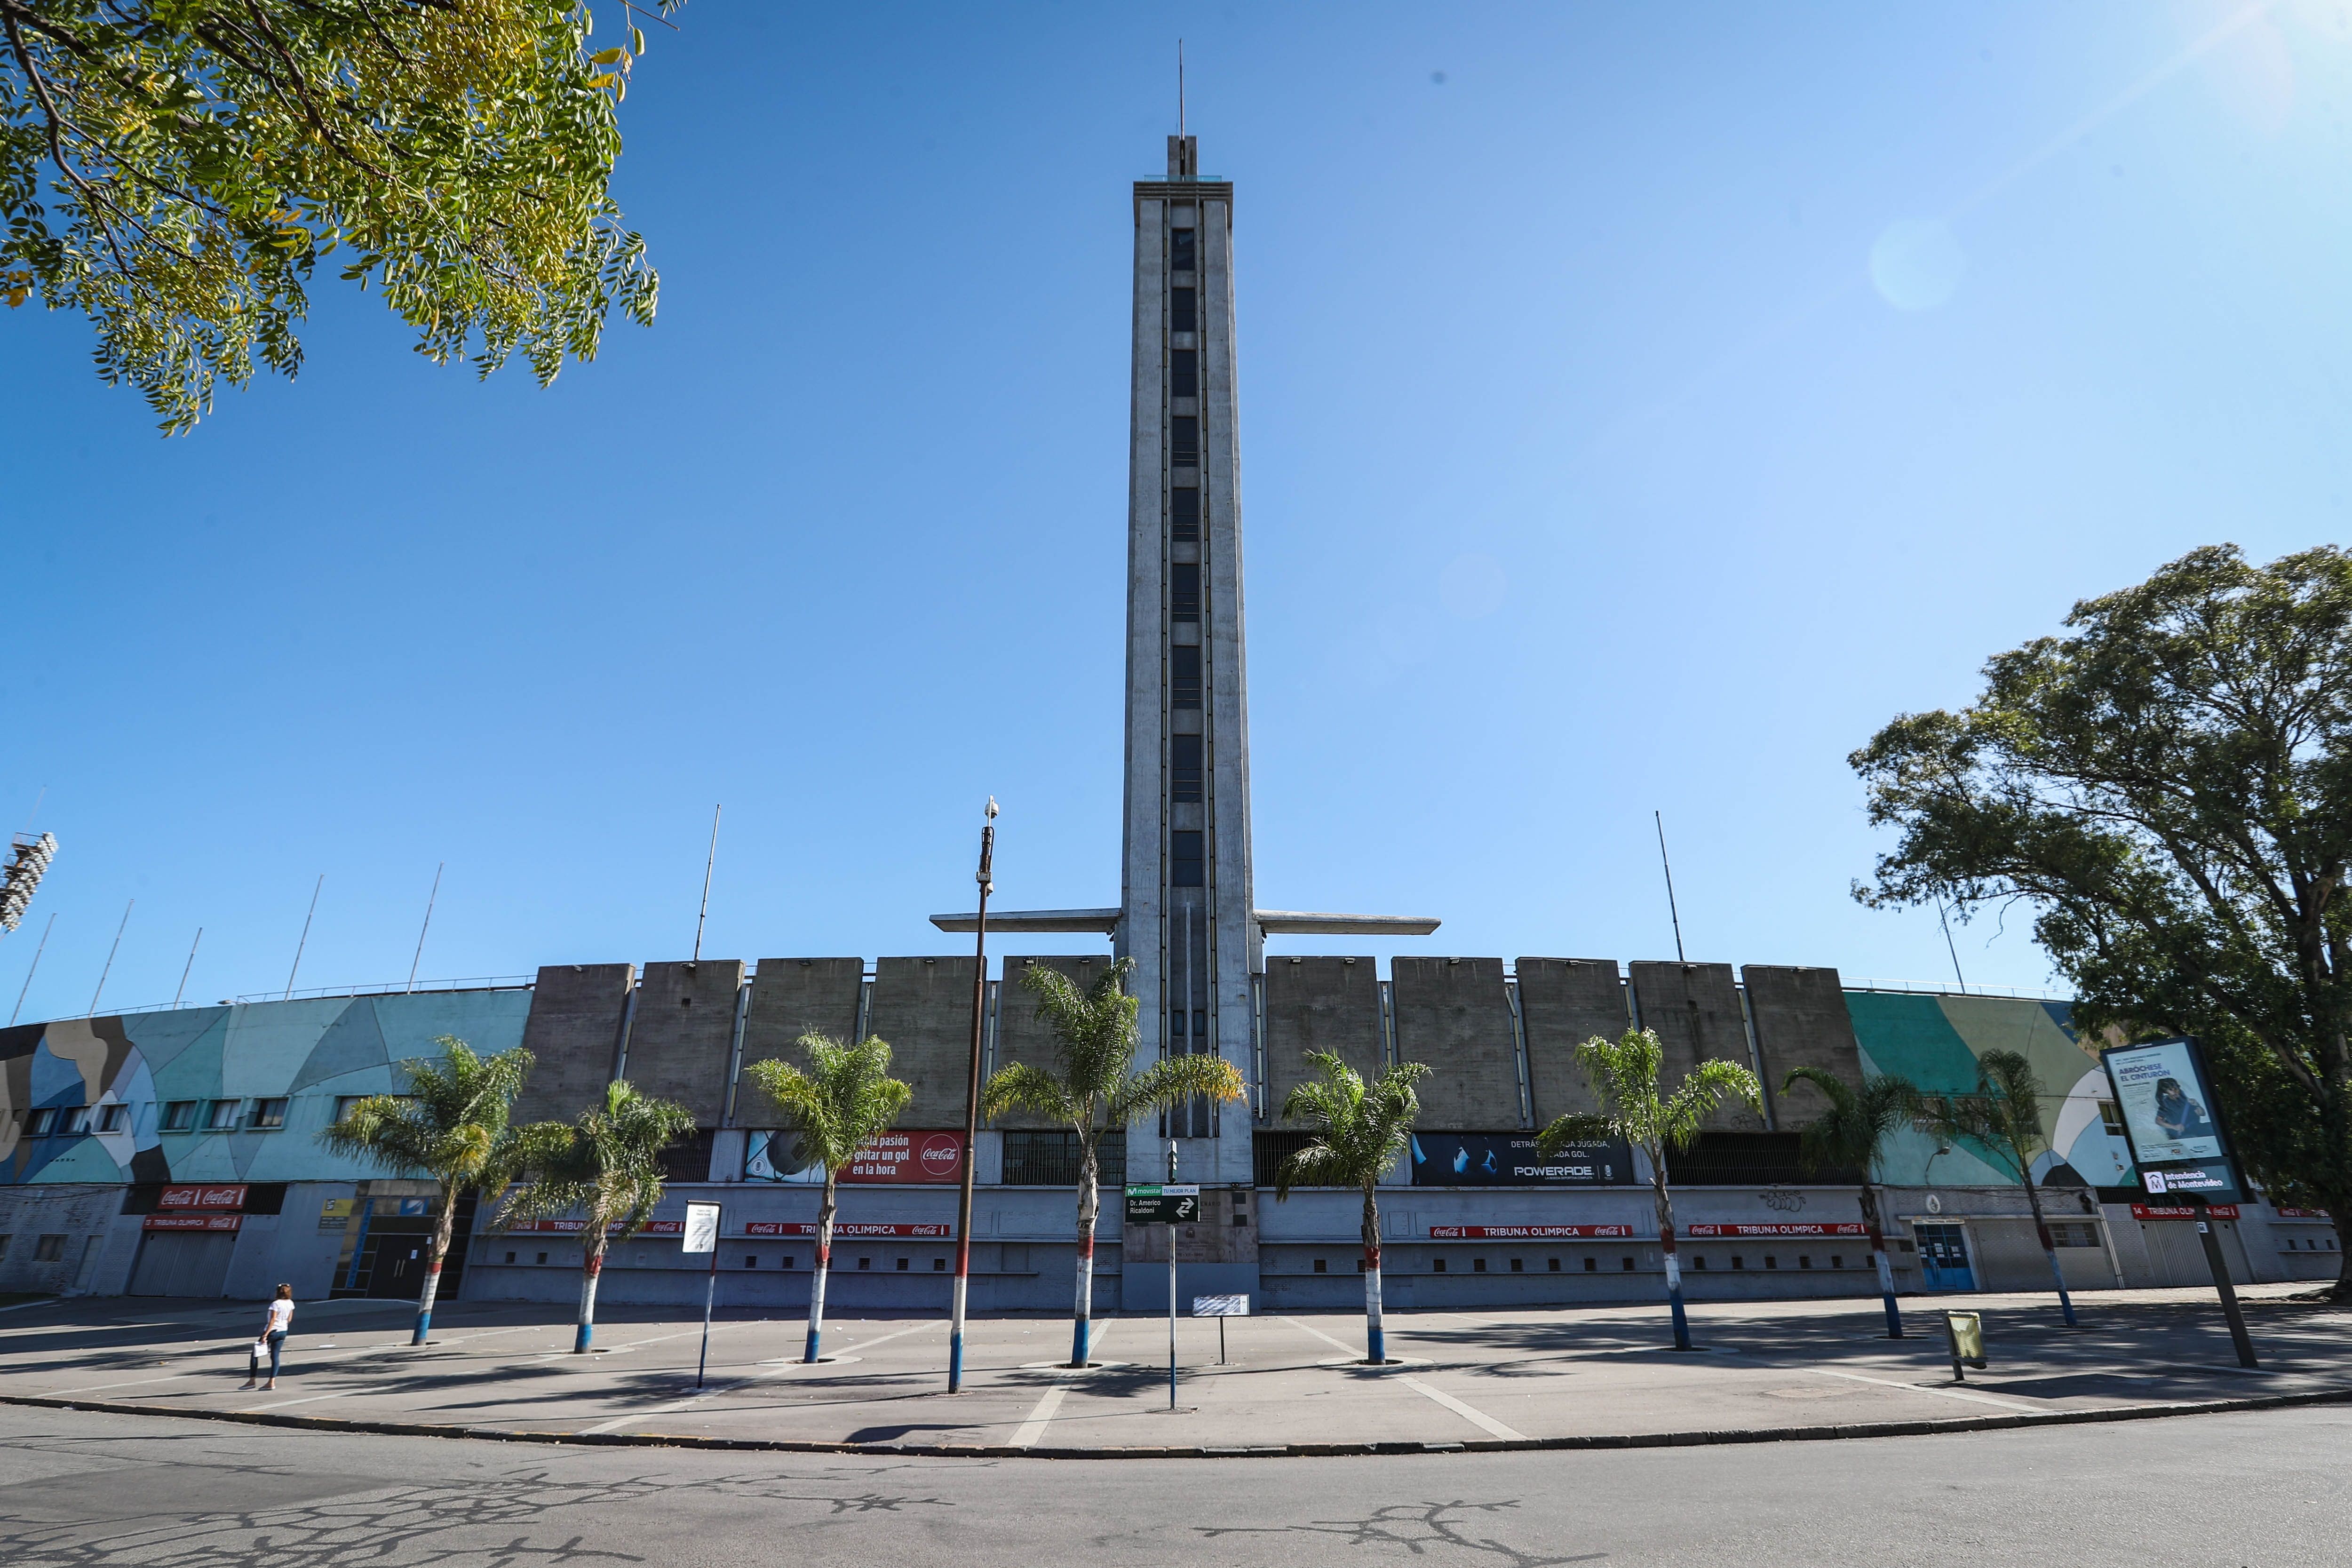 Vista de los alrededores del estadio Centenario tras la exhortación del gobierno uruguayo de que la población se aisle en sus hogares para evitar la propagación del coronavirus. (Foto Prensa Libre: EFE)